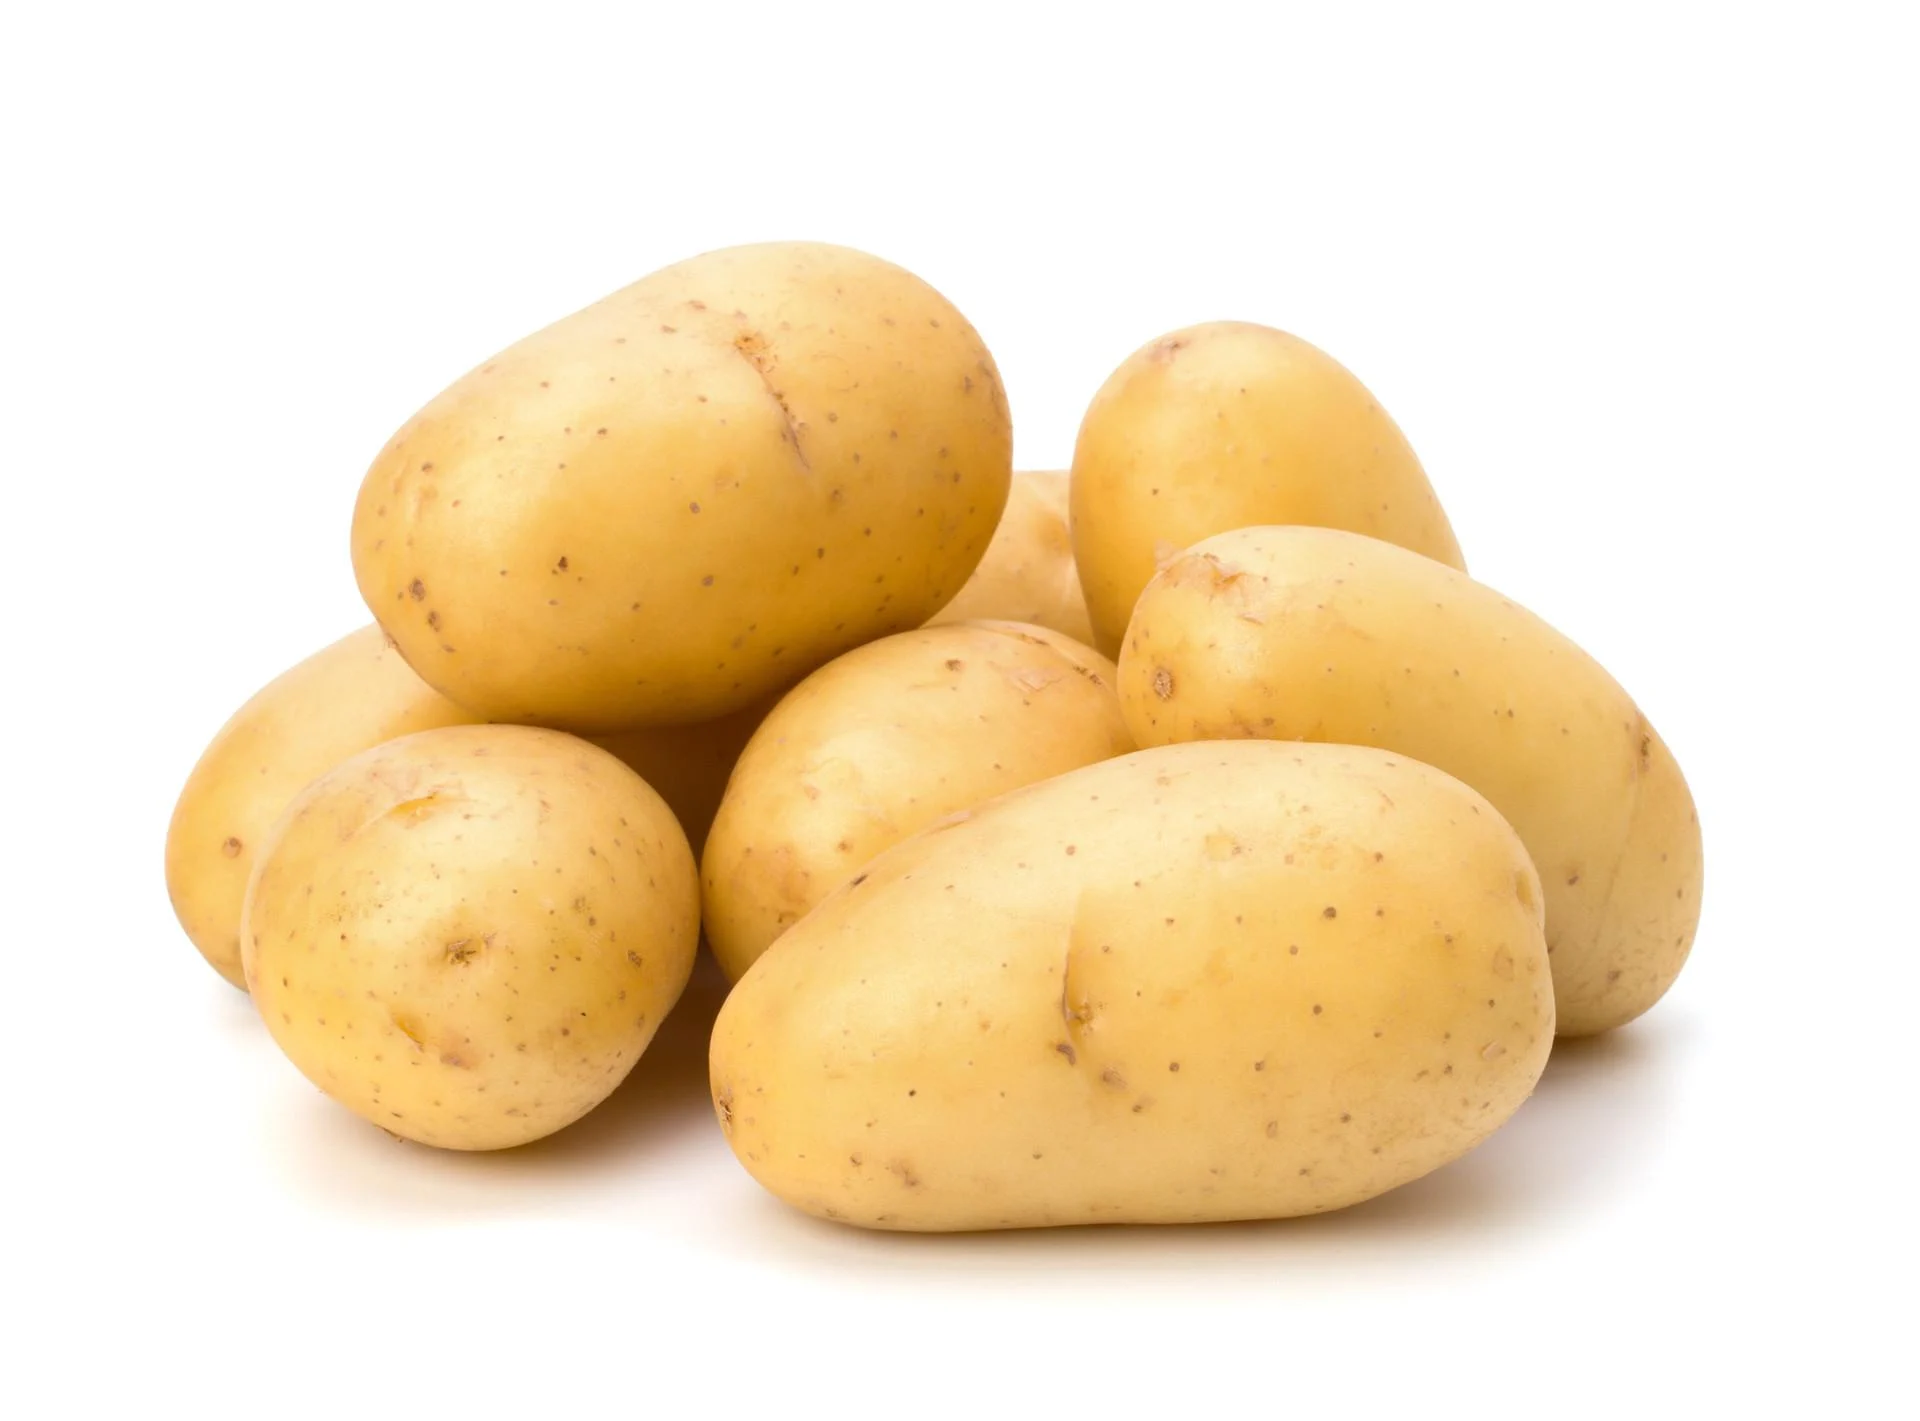 Dietë me patate: Heq pesë kg për tri ditë, por duhet të kini kujdes!